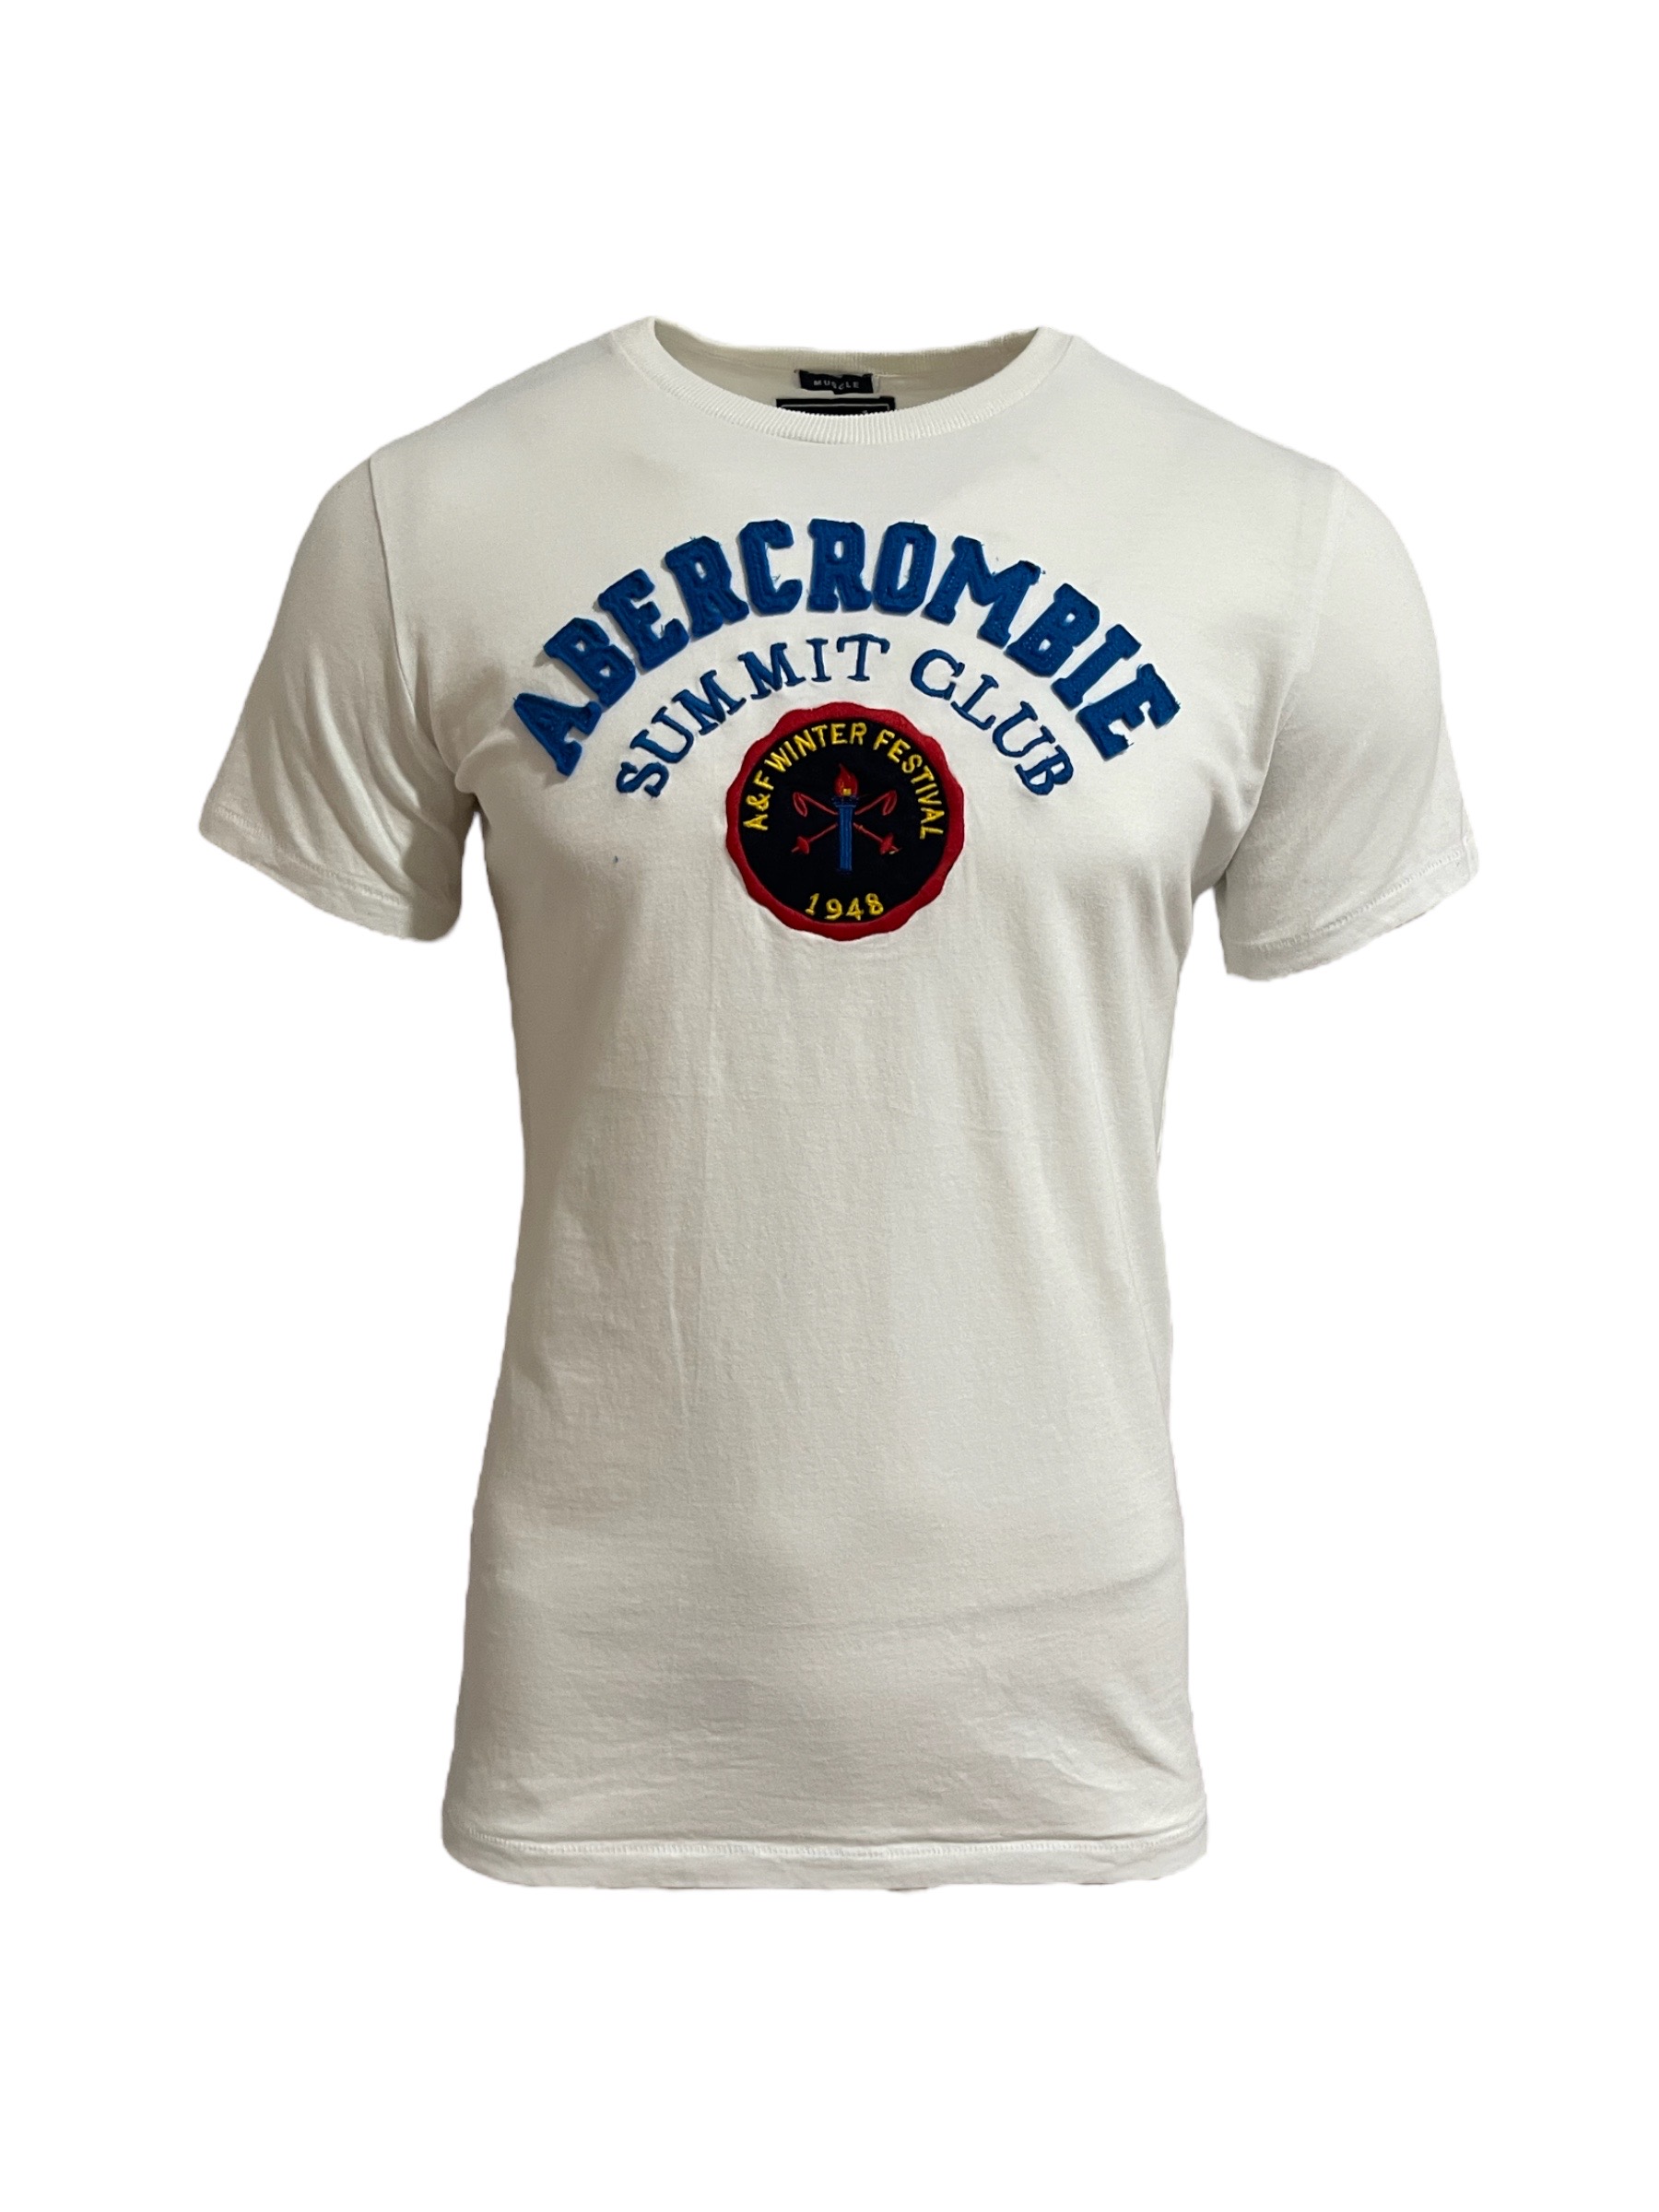 Camiseta Abercrombie Masculina 1948 Branca - Gareth | Store Men